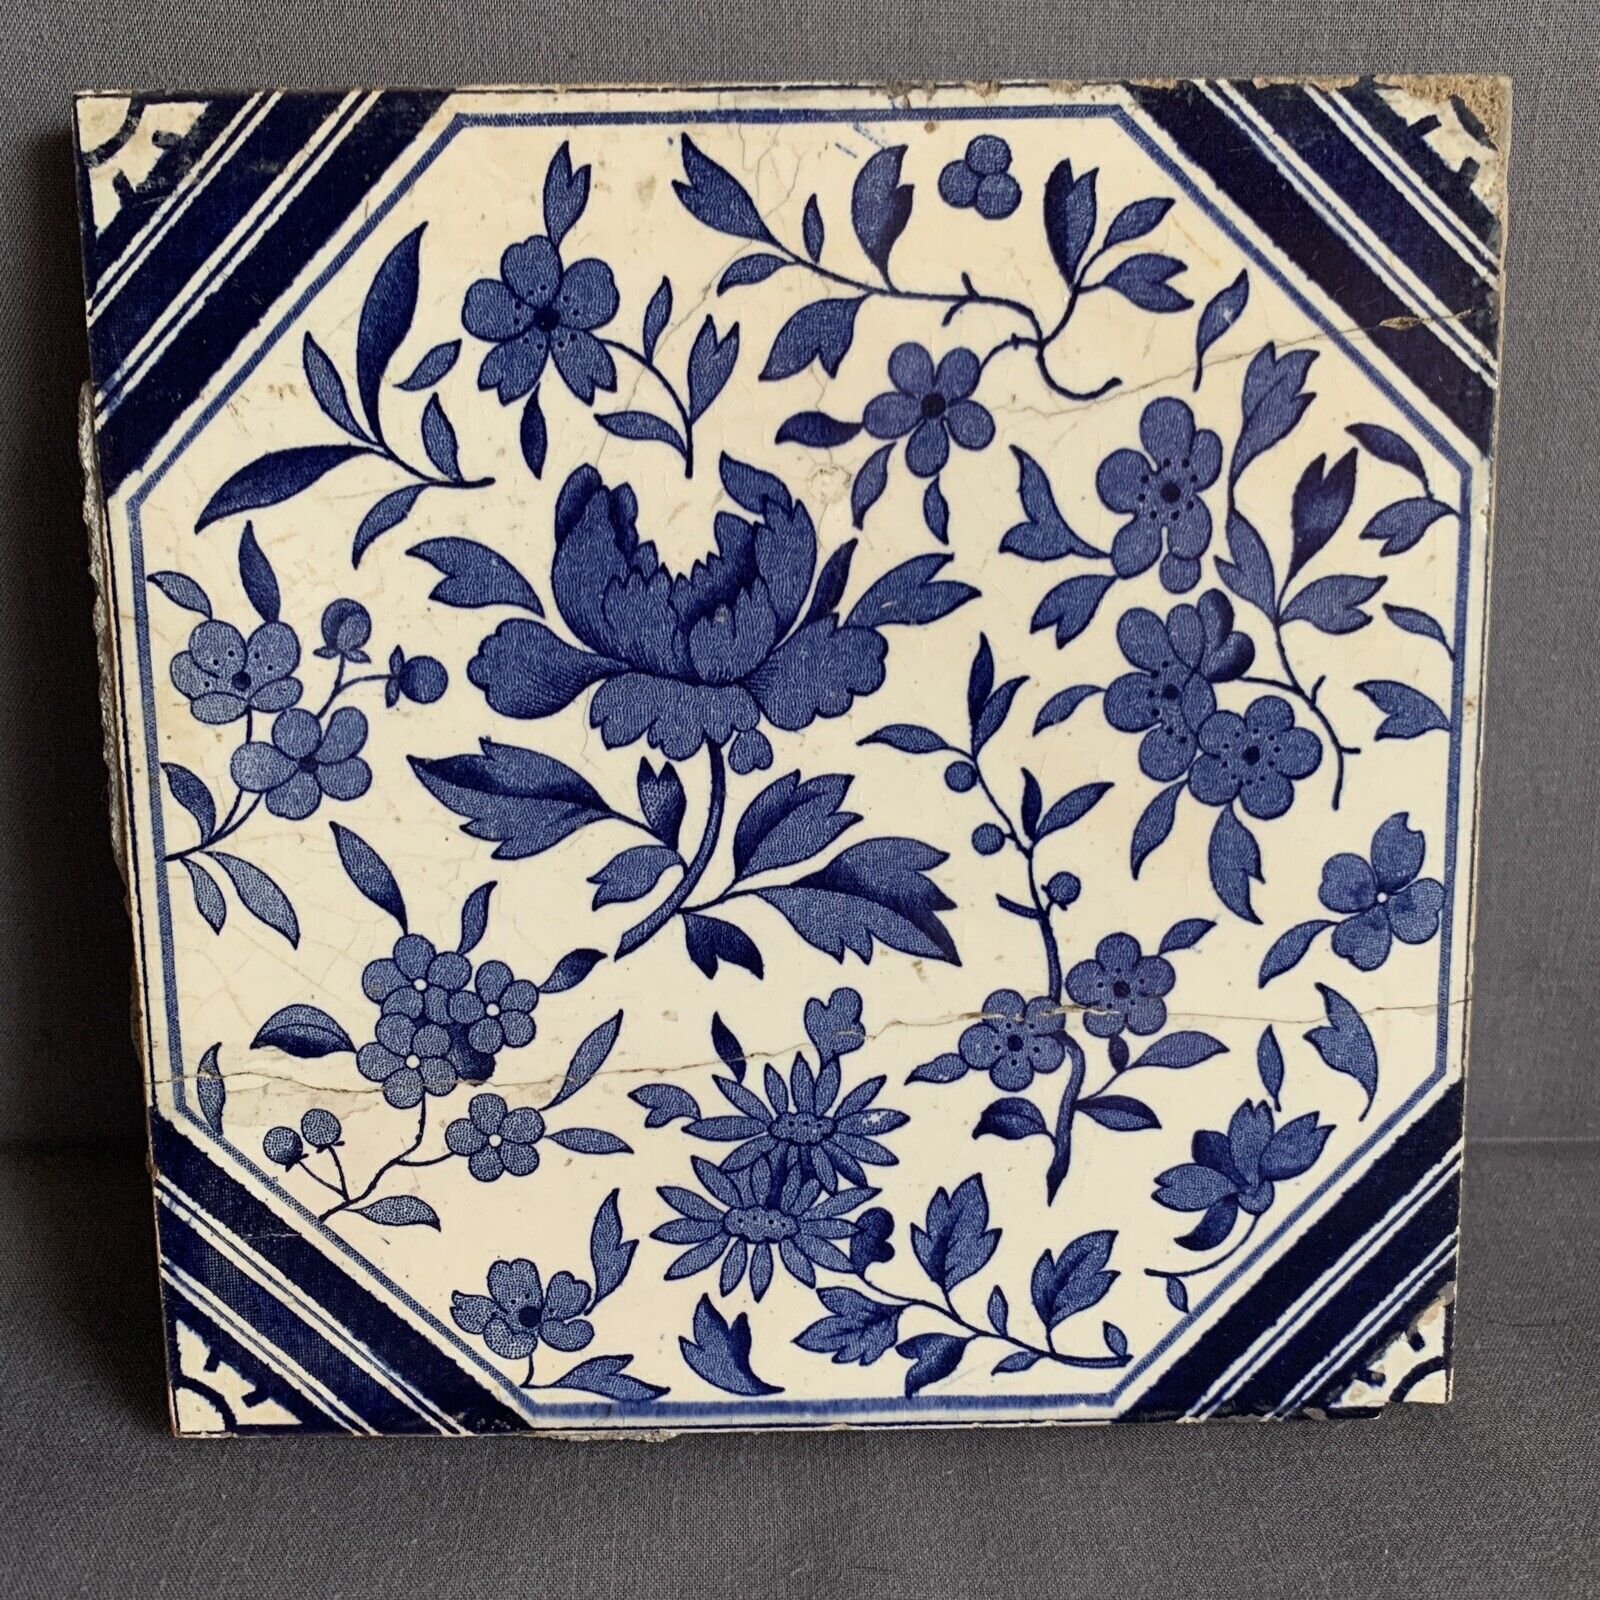 Antique Mintons? Dutch Delft? Tile Blue and White - Needs Repair